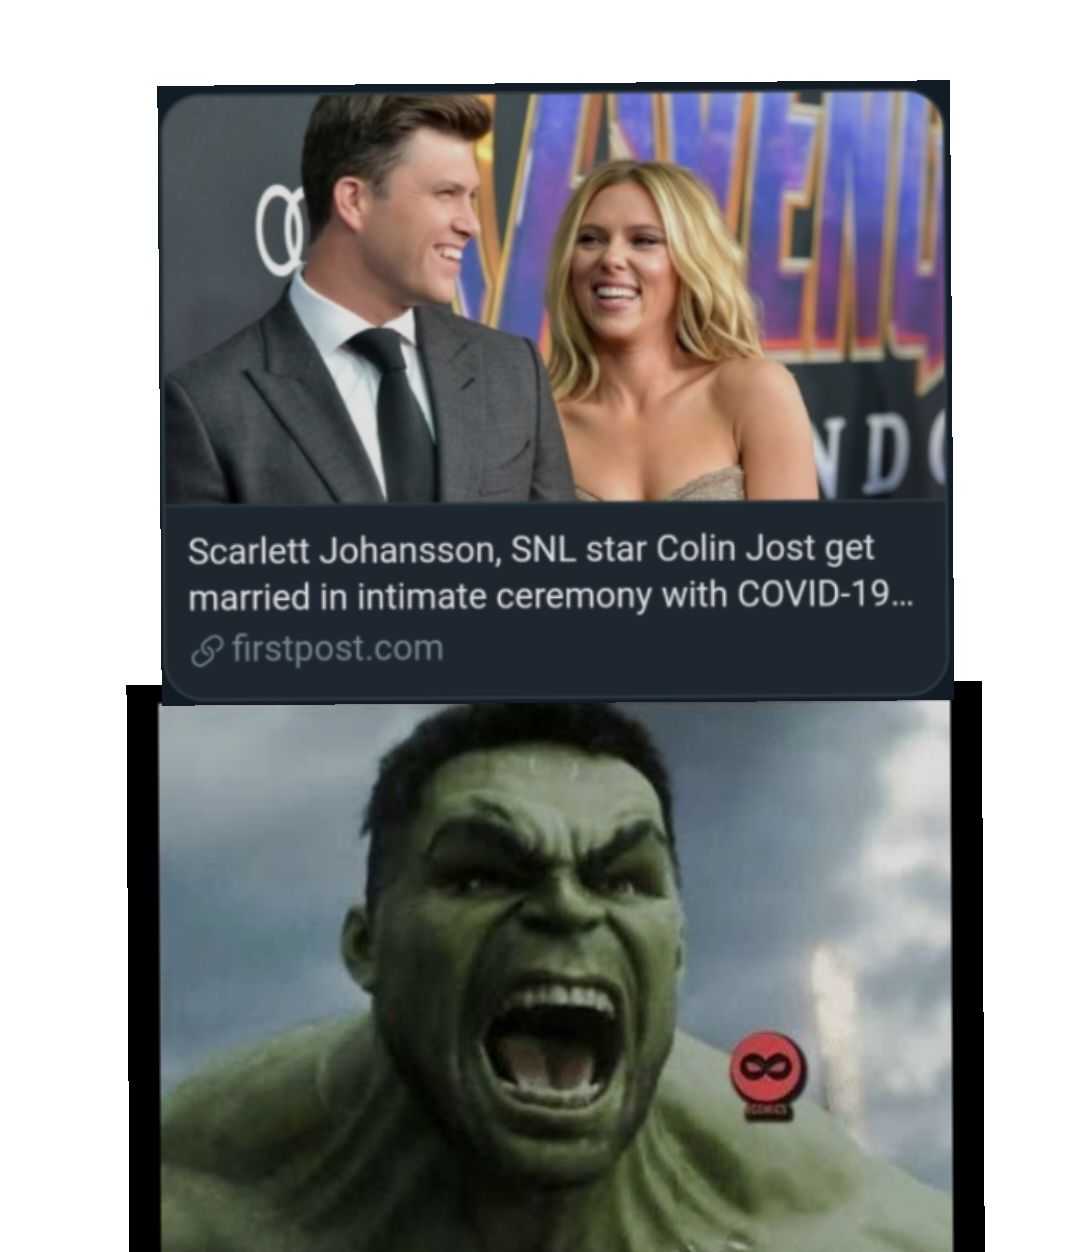 funny hulk memes